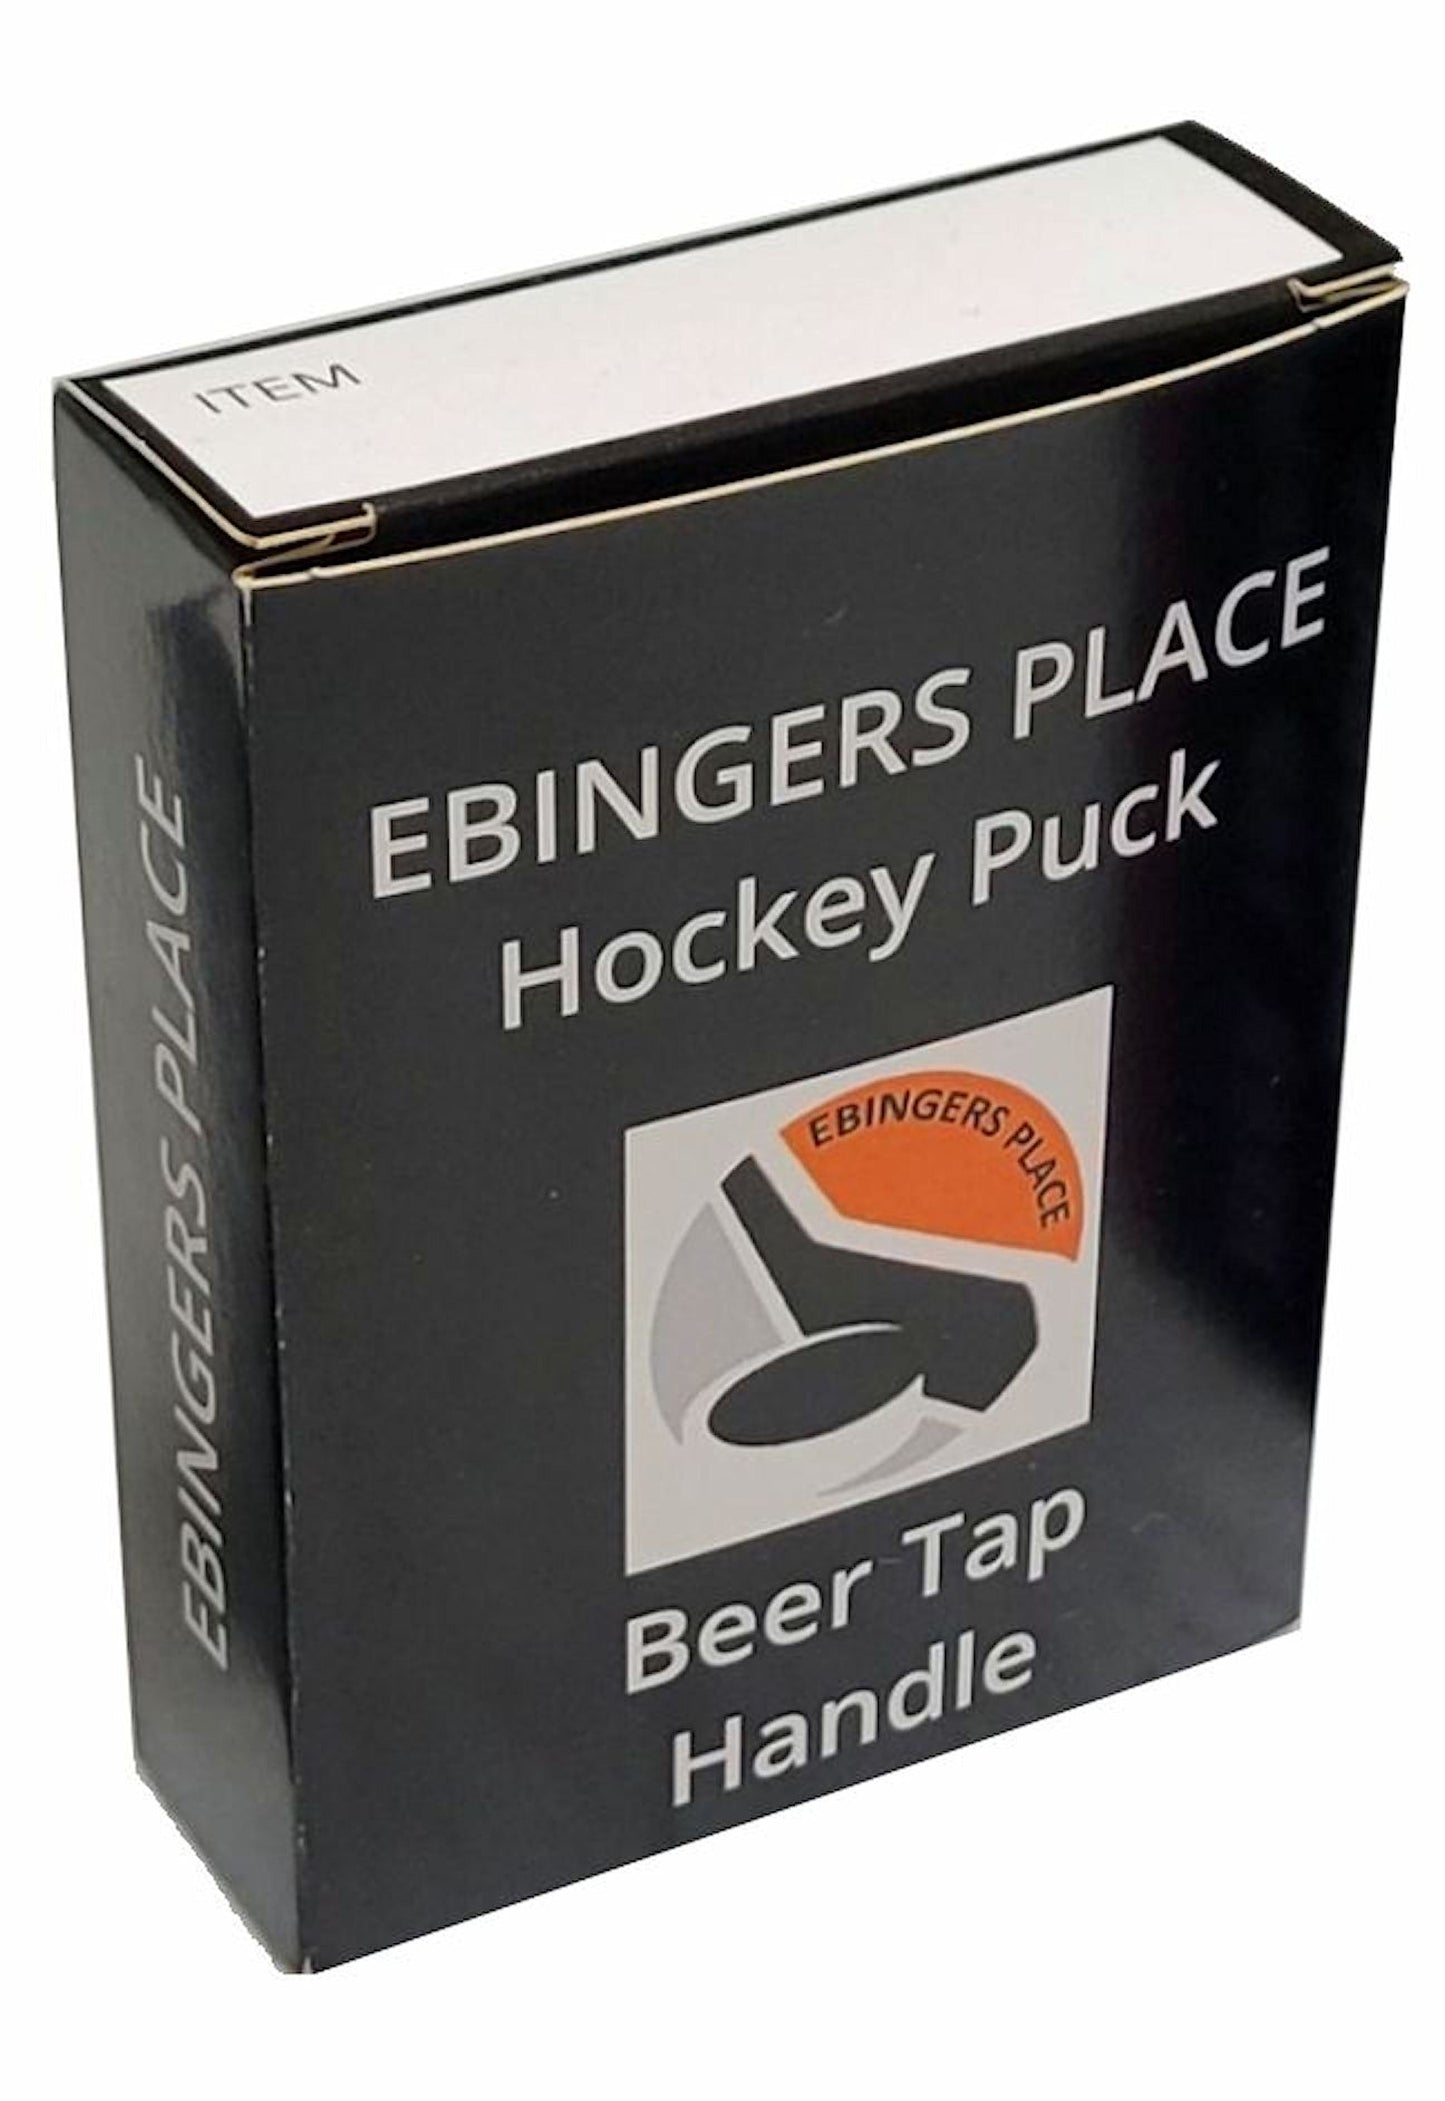 New York Rangers Reverse Series Hockey Puck Beer Tap Handle